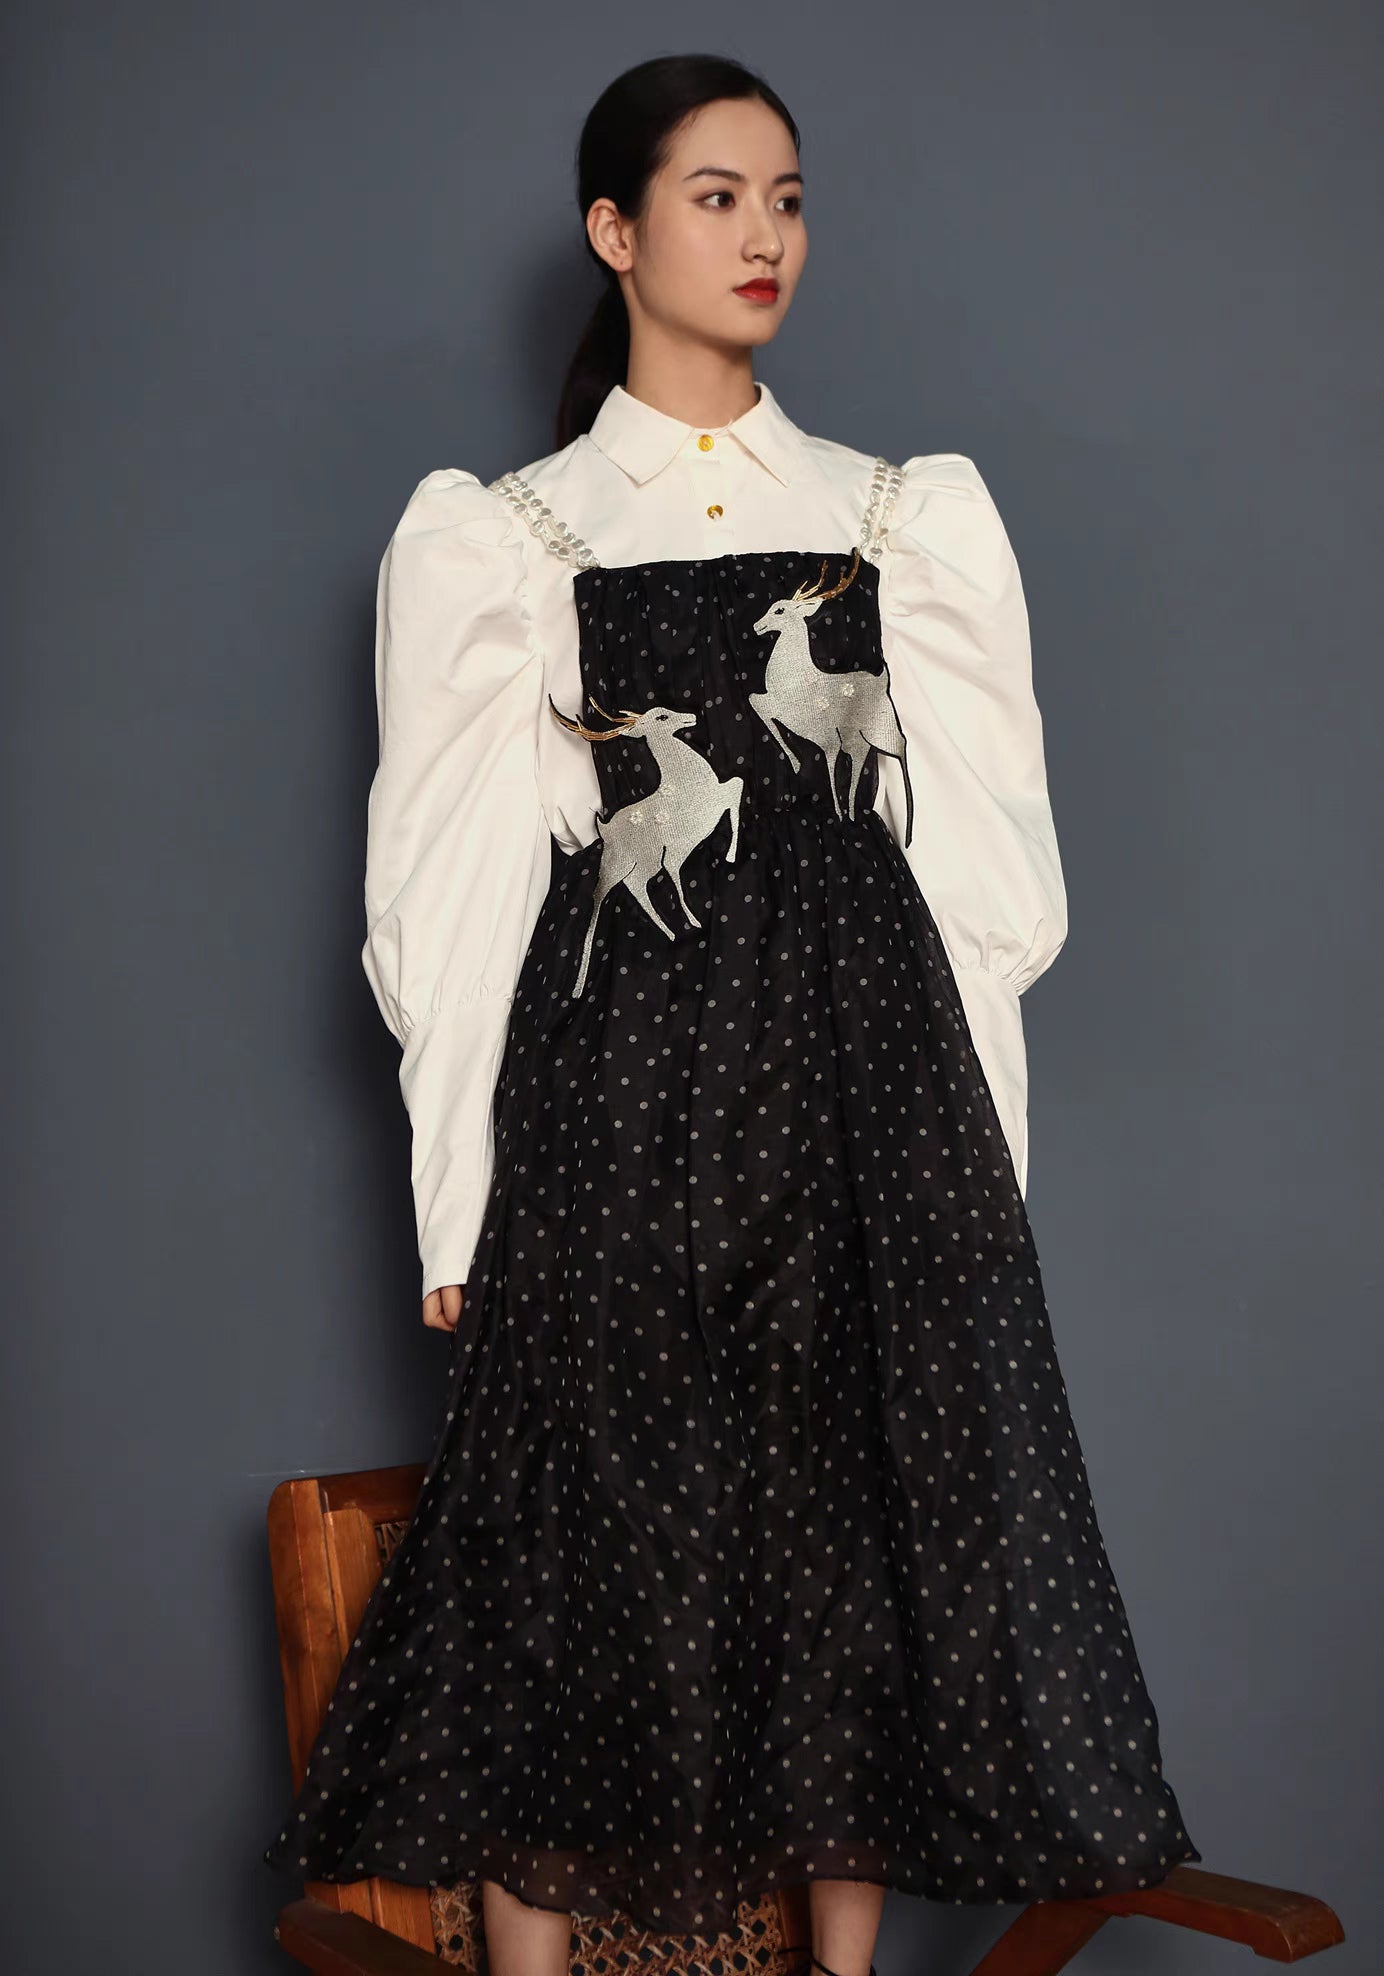 deer embroidered suspender skirt black and white polka dot dress